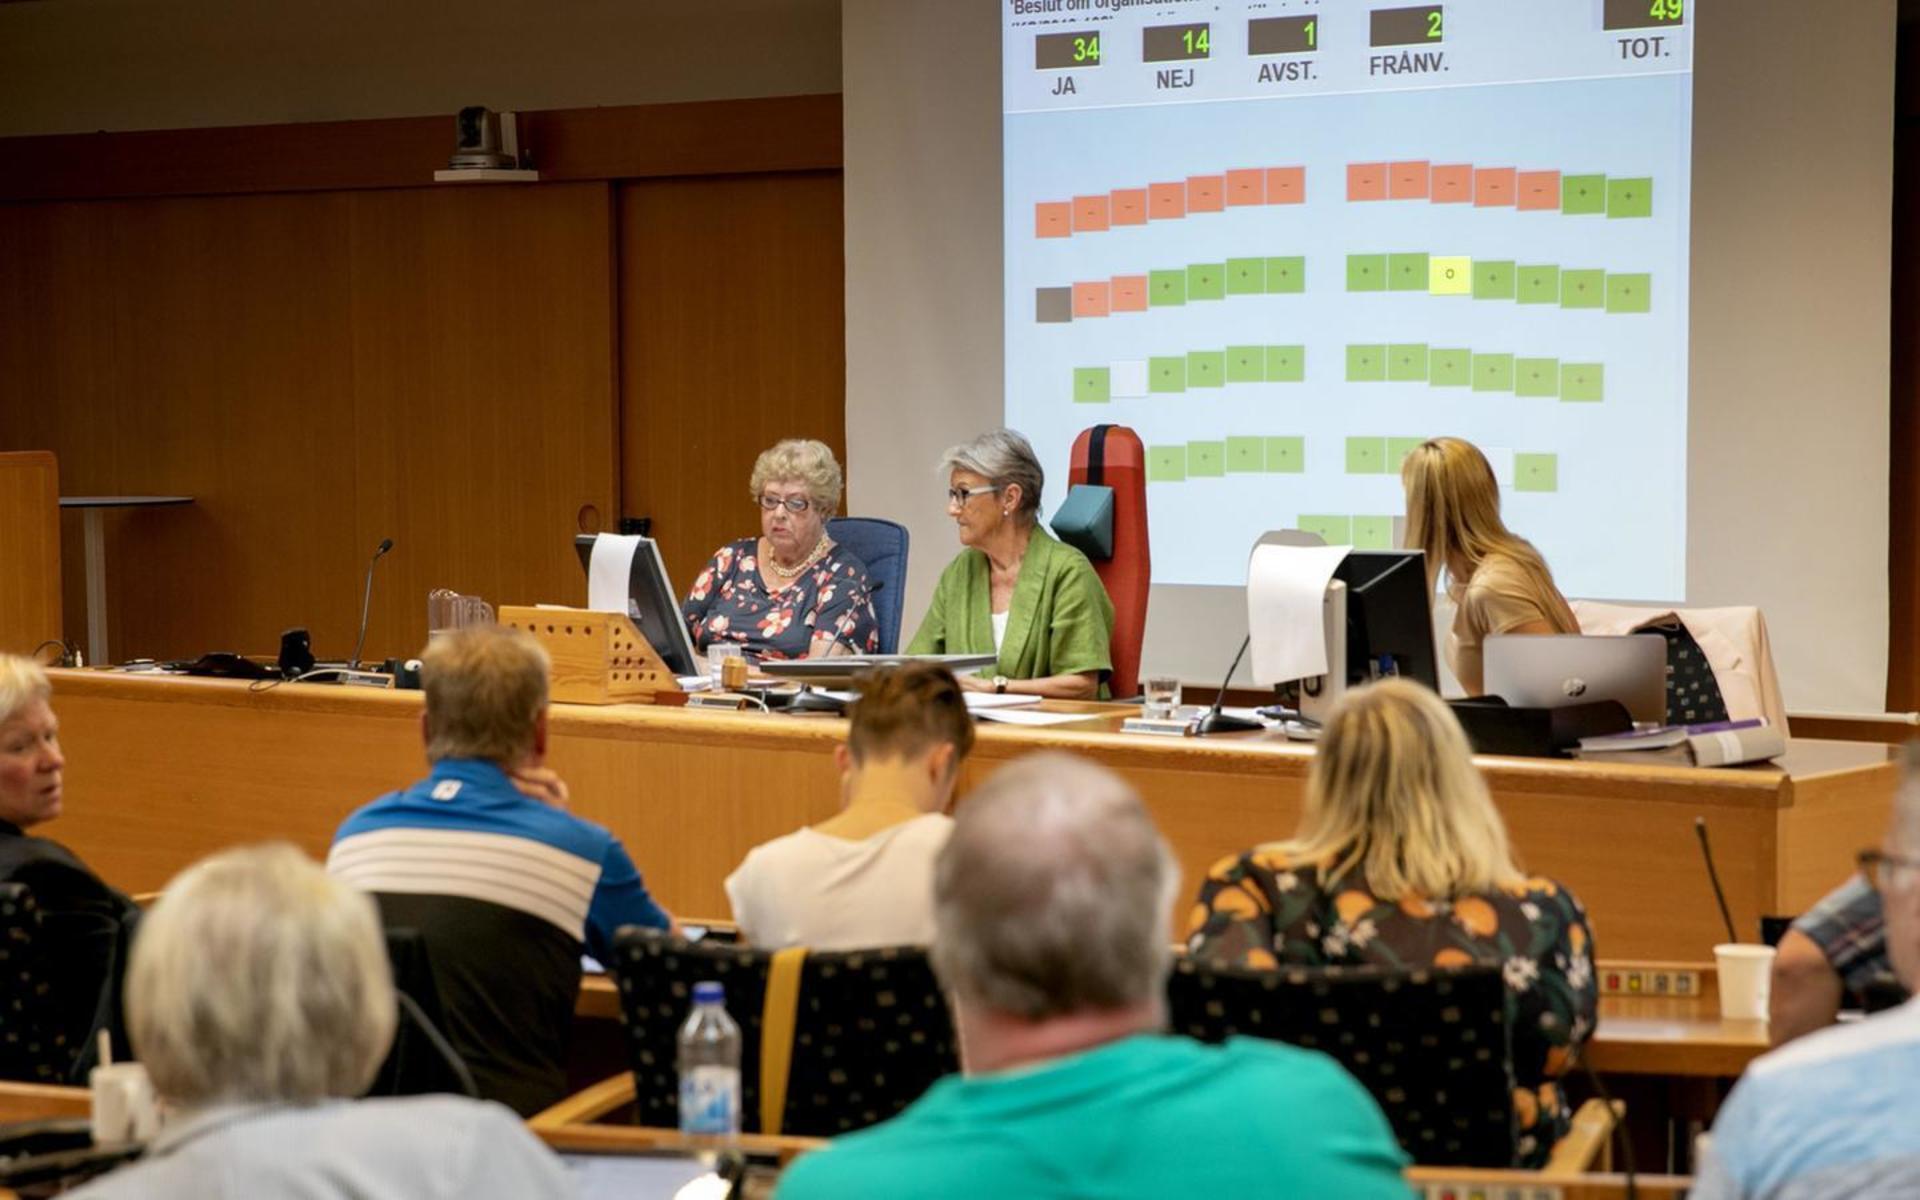 14 nej och 36 ja. En majoritet i Partille kommunfullmäktige röstade ja till att flytta högstadieskolorna i Furulund och Björndammen till nya Stadsparksskolan i centrala Partille. Det är överklagandet av det beslutet som förvaltningsrätten nu avslår.